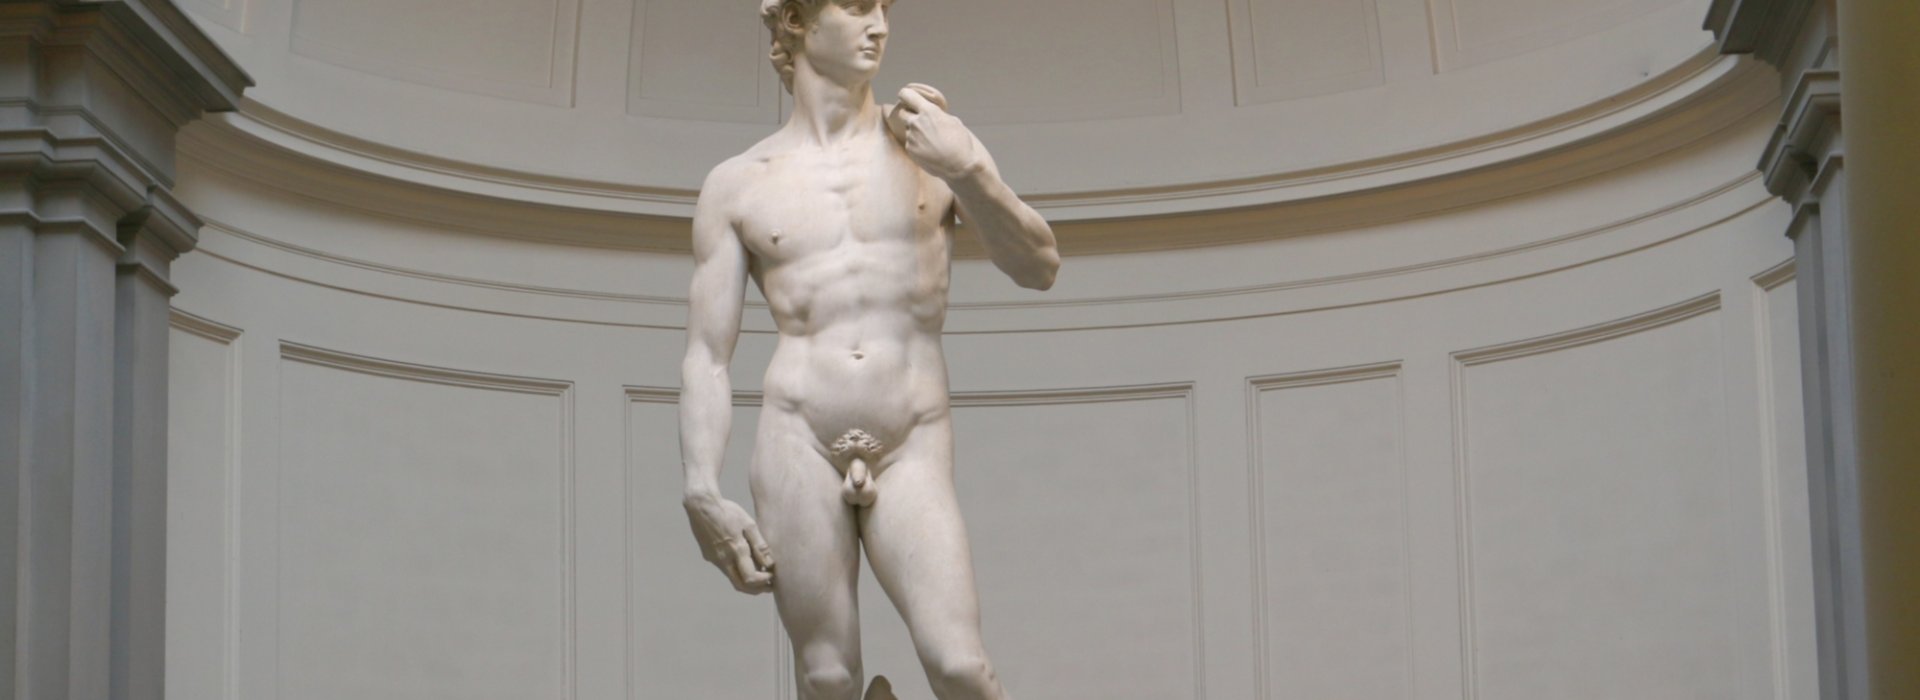 Il David di Michelangelo alla Galleria dell'Accademia